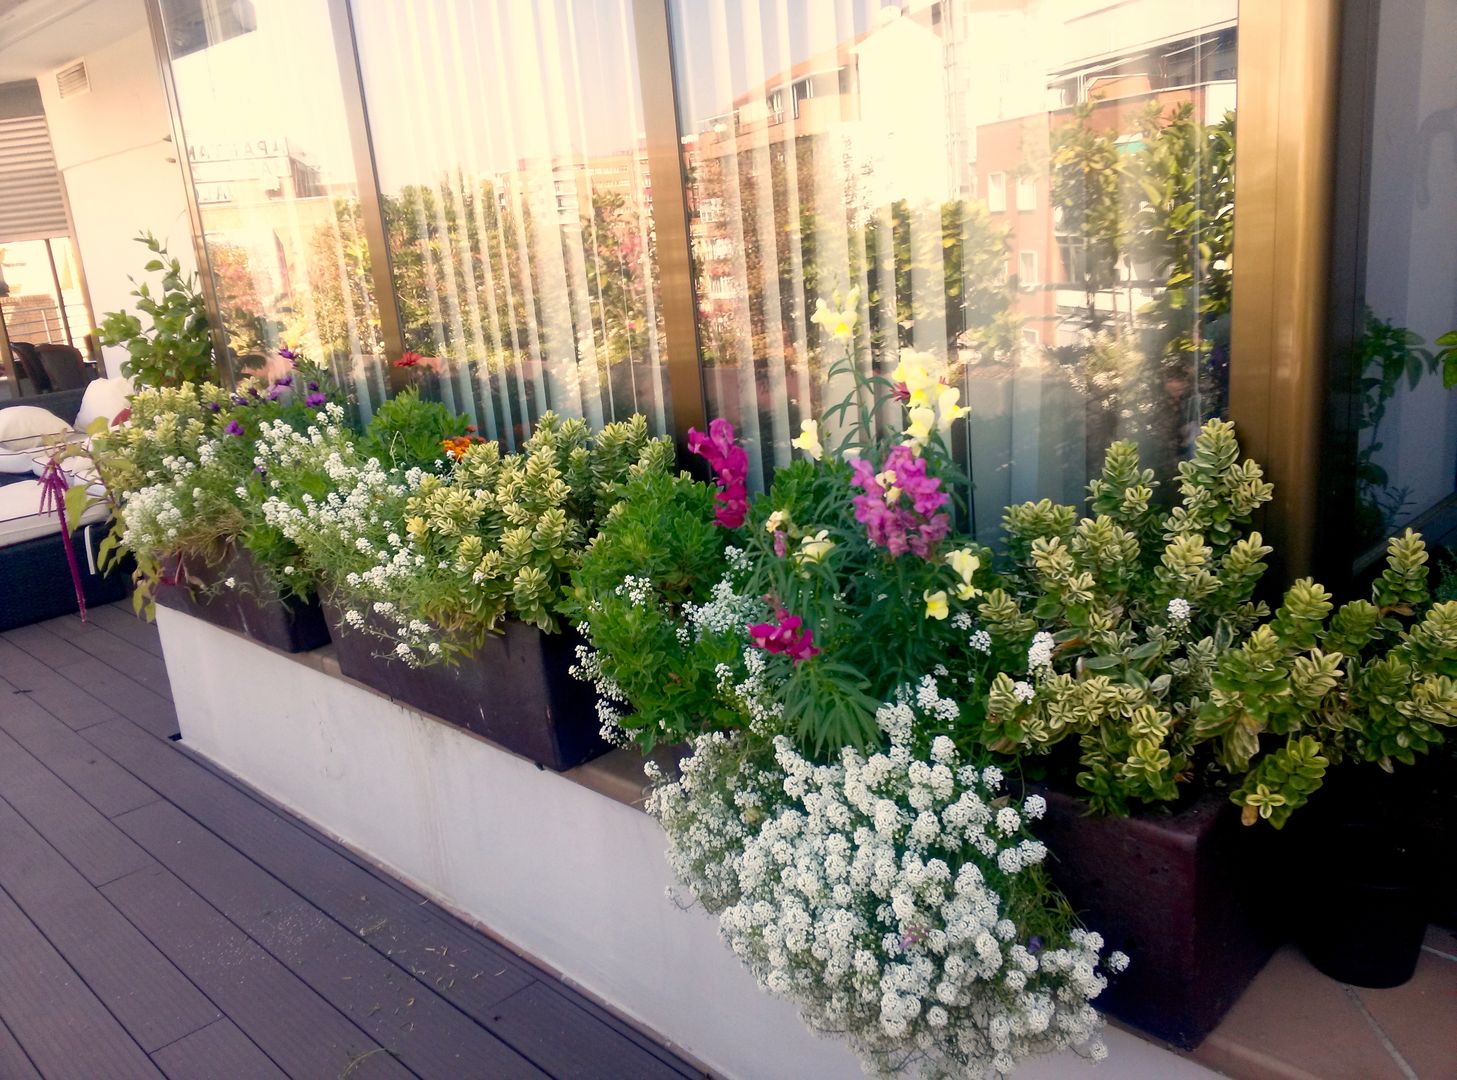 Las jardineras de la ventana homify Balcones y terrazas de estilo moderno terraza,diseño,plantas,arbustos,flor